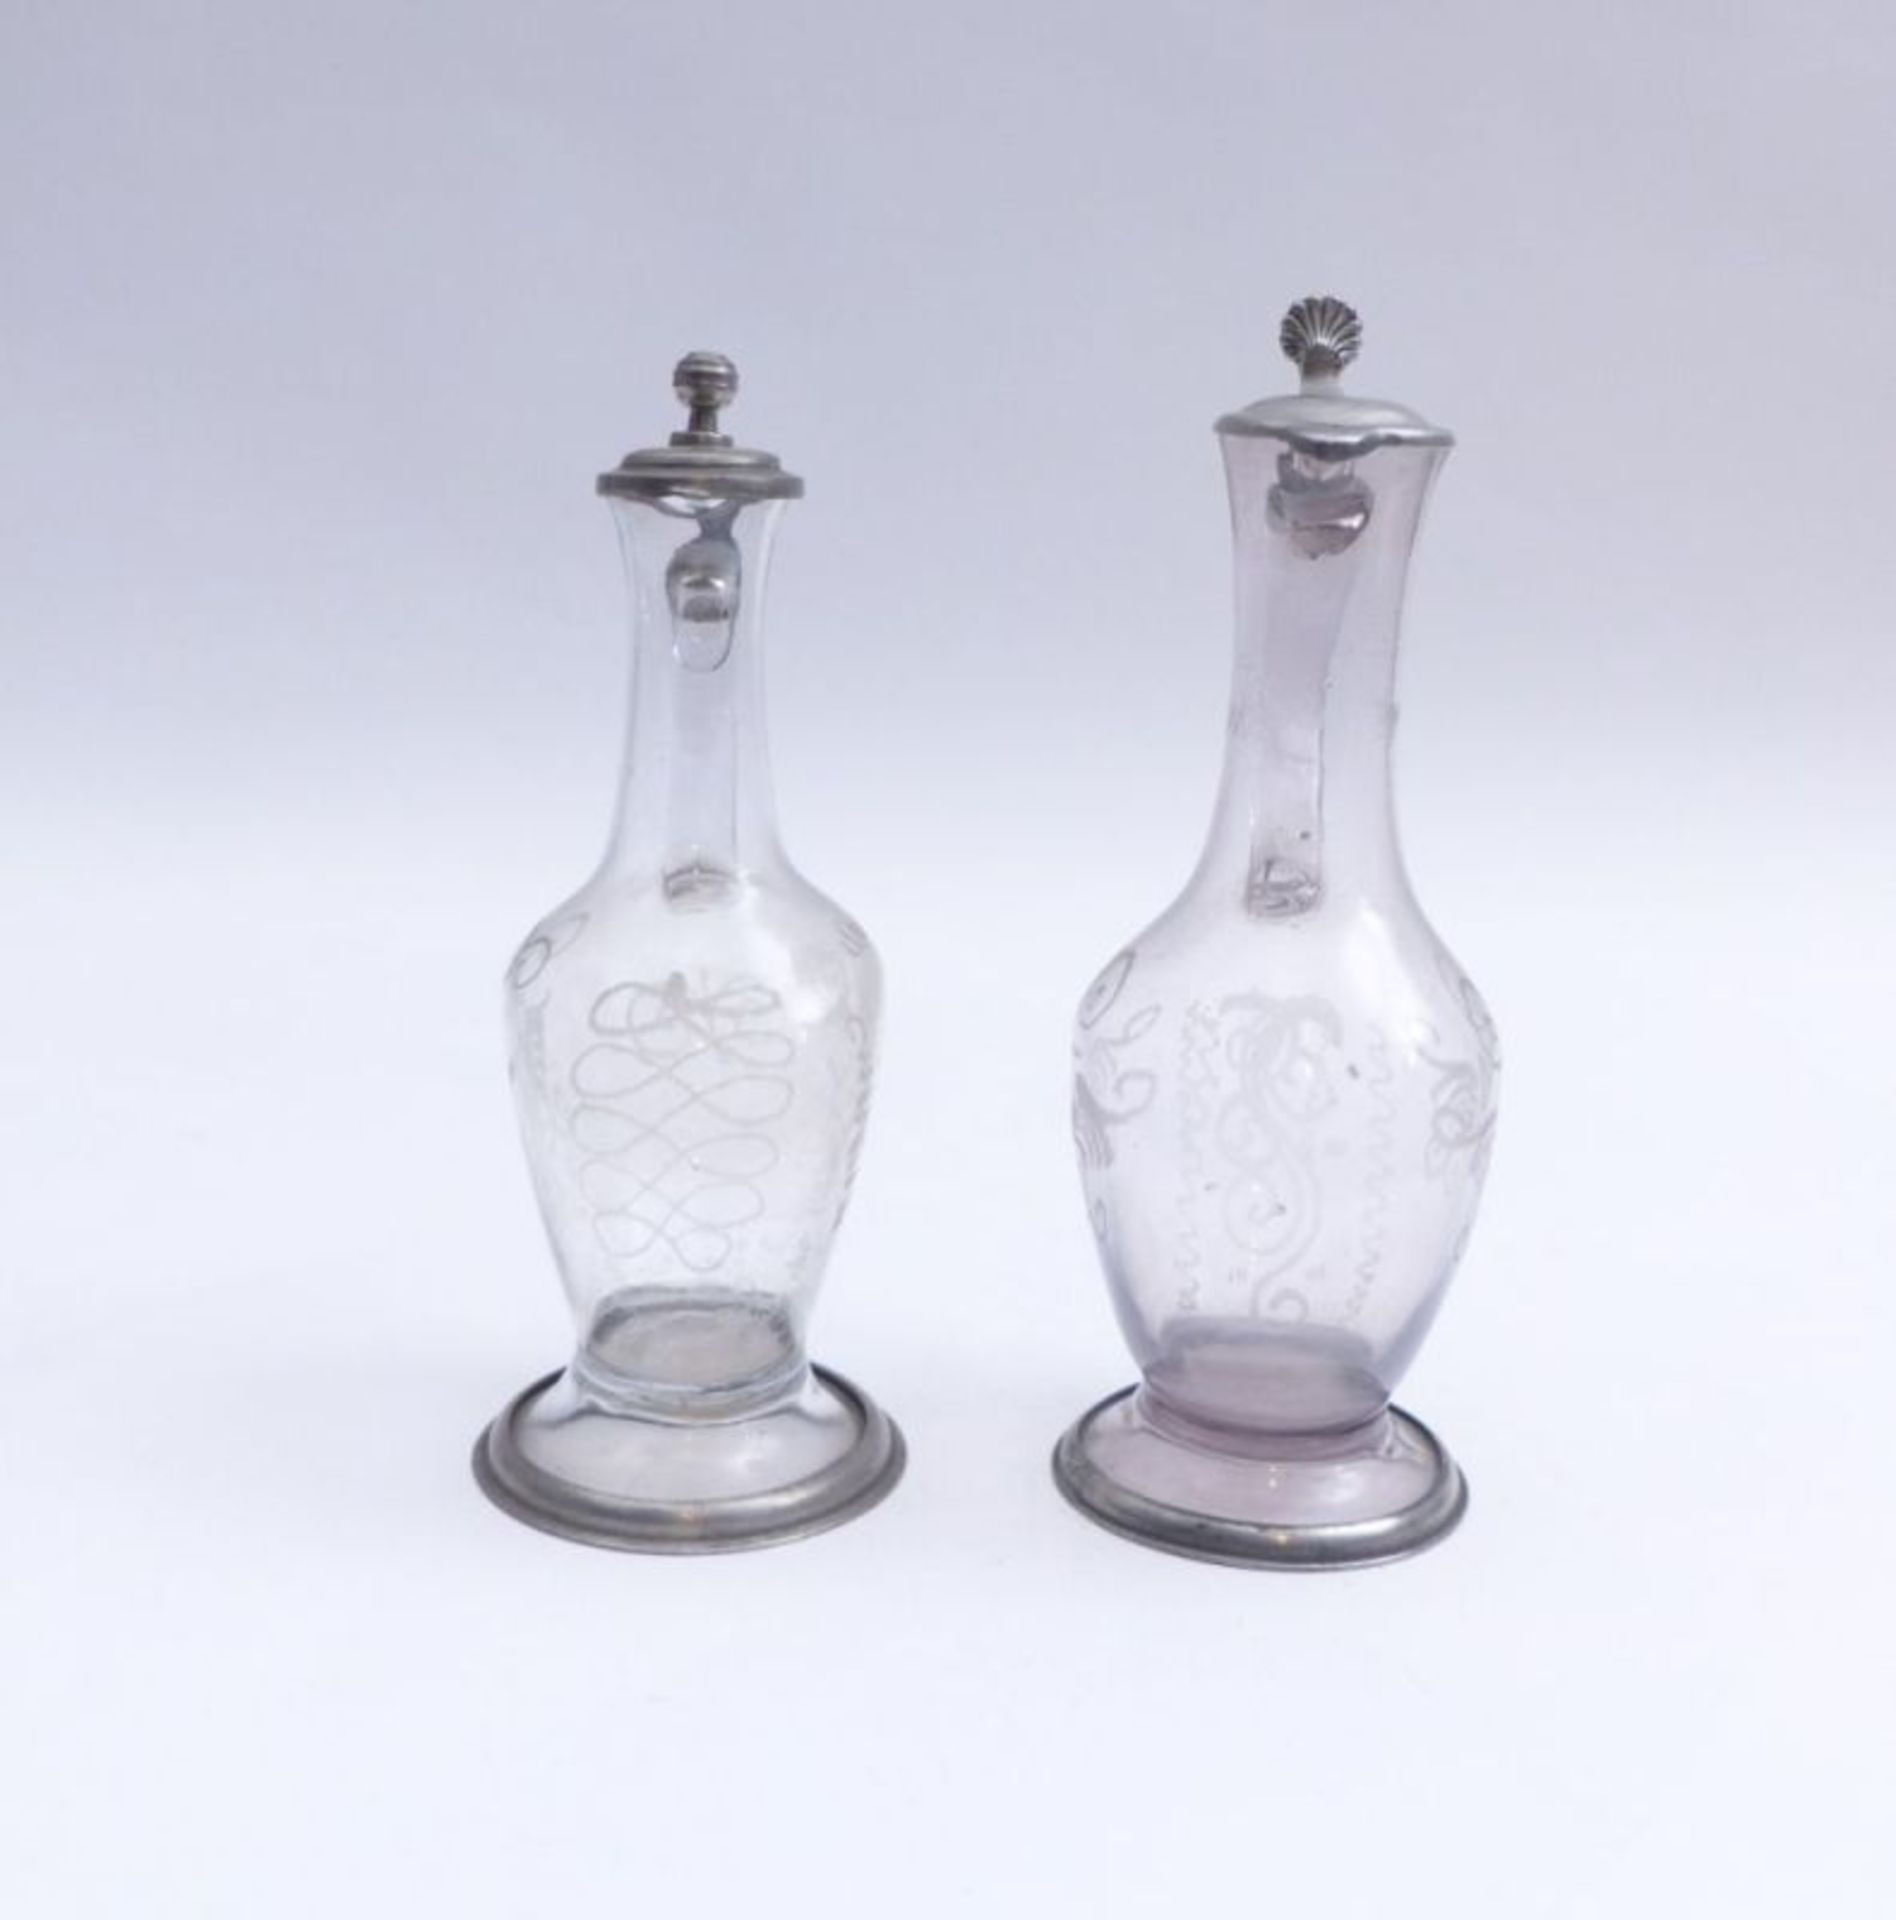 Paar Glaskrüge, 18. Jh. - Image 3 of 3